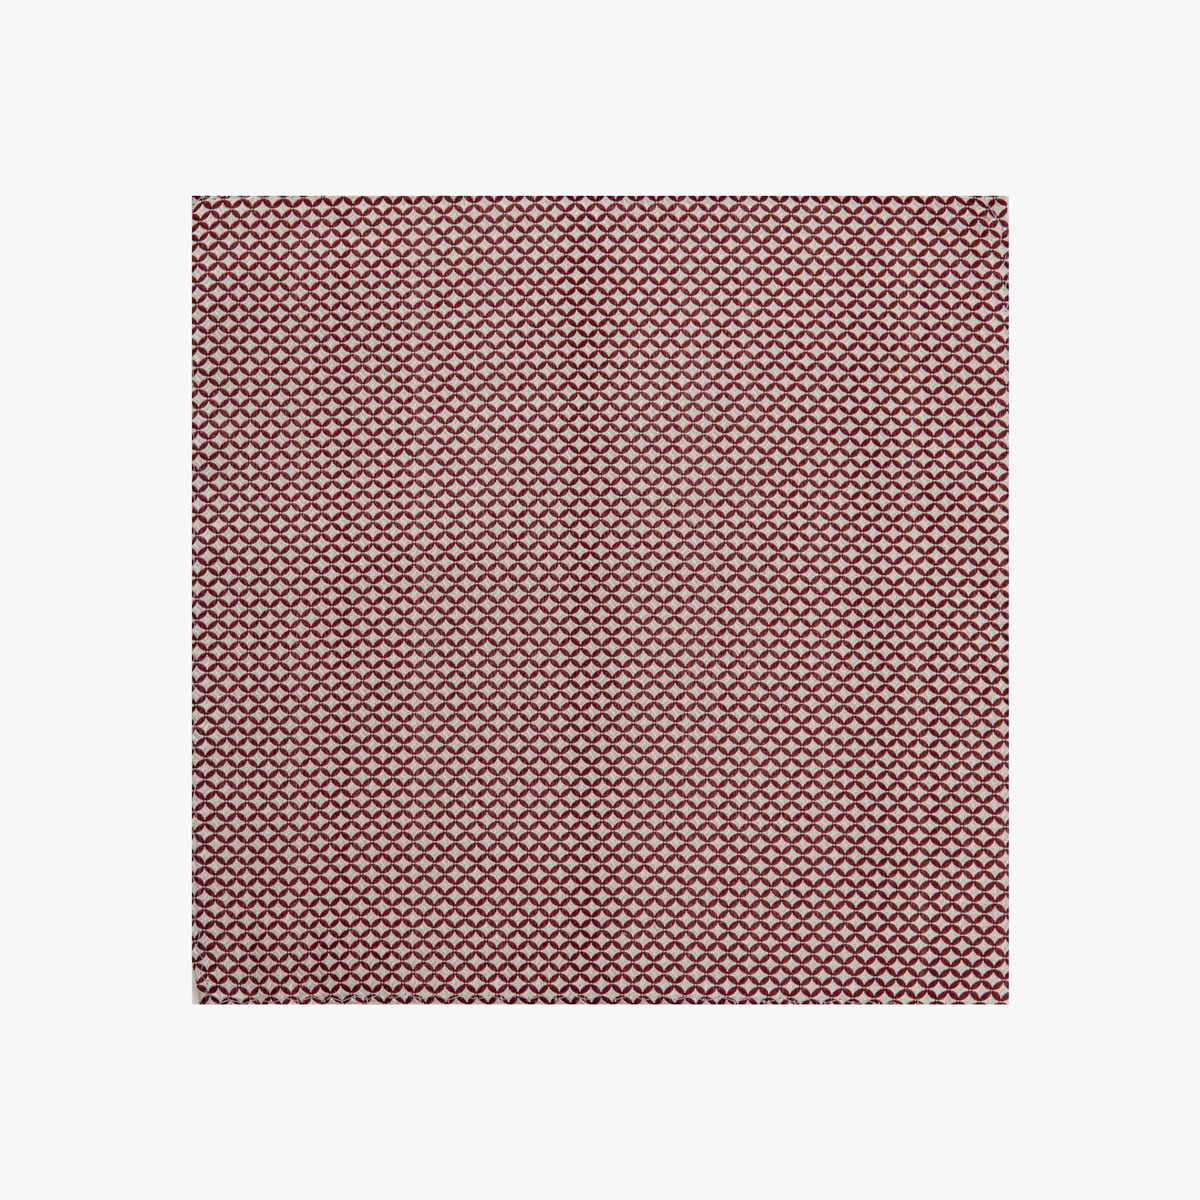 Stoff vom Einstecktuch mit geometrischen Muster in beige-rot 